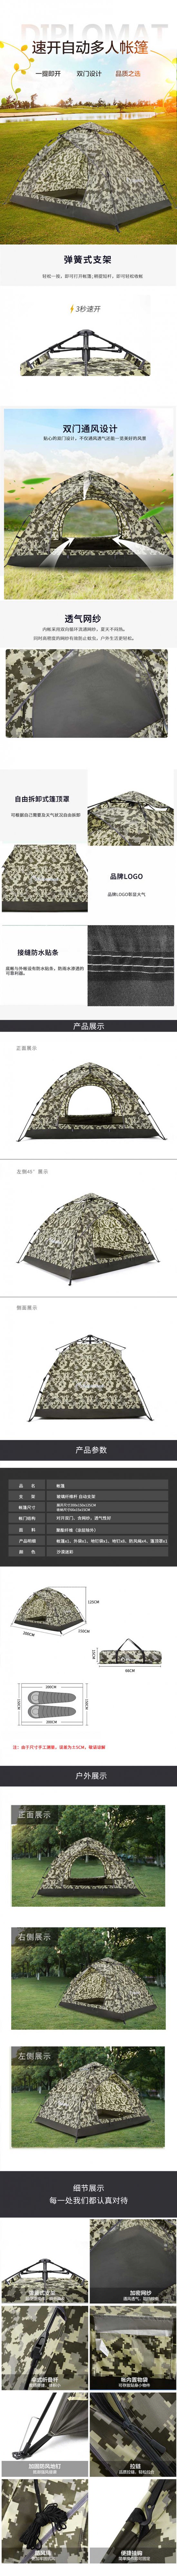 790px-迷彩小自动帐篷.jpg